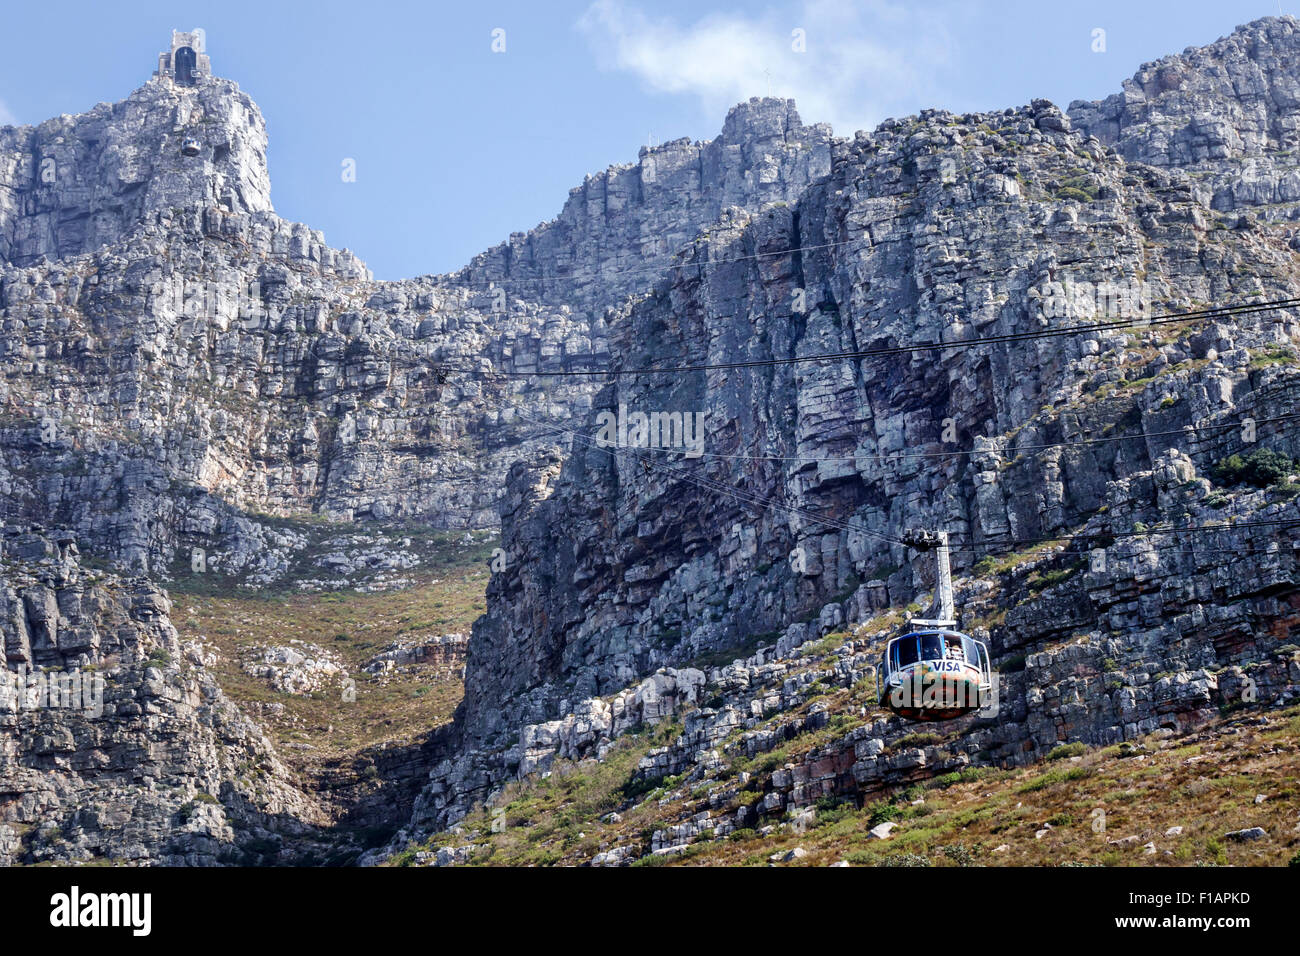 Cape Town Afrique du Sud, Parc national de Table Mountain, réserve naturelle, chemin Tafelberg, téléphérique tramway, à proximité de la station inférieure, Rotair c Banque D'Images